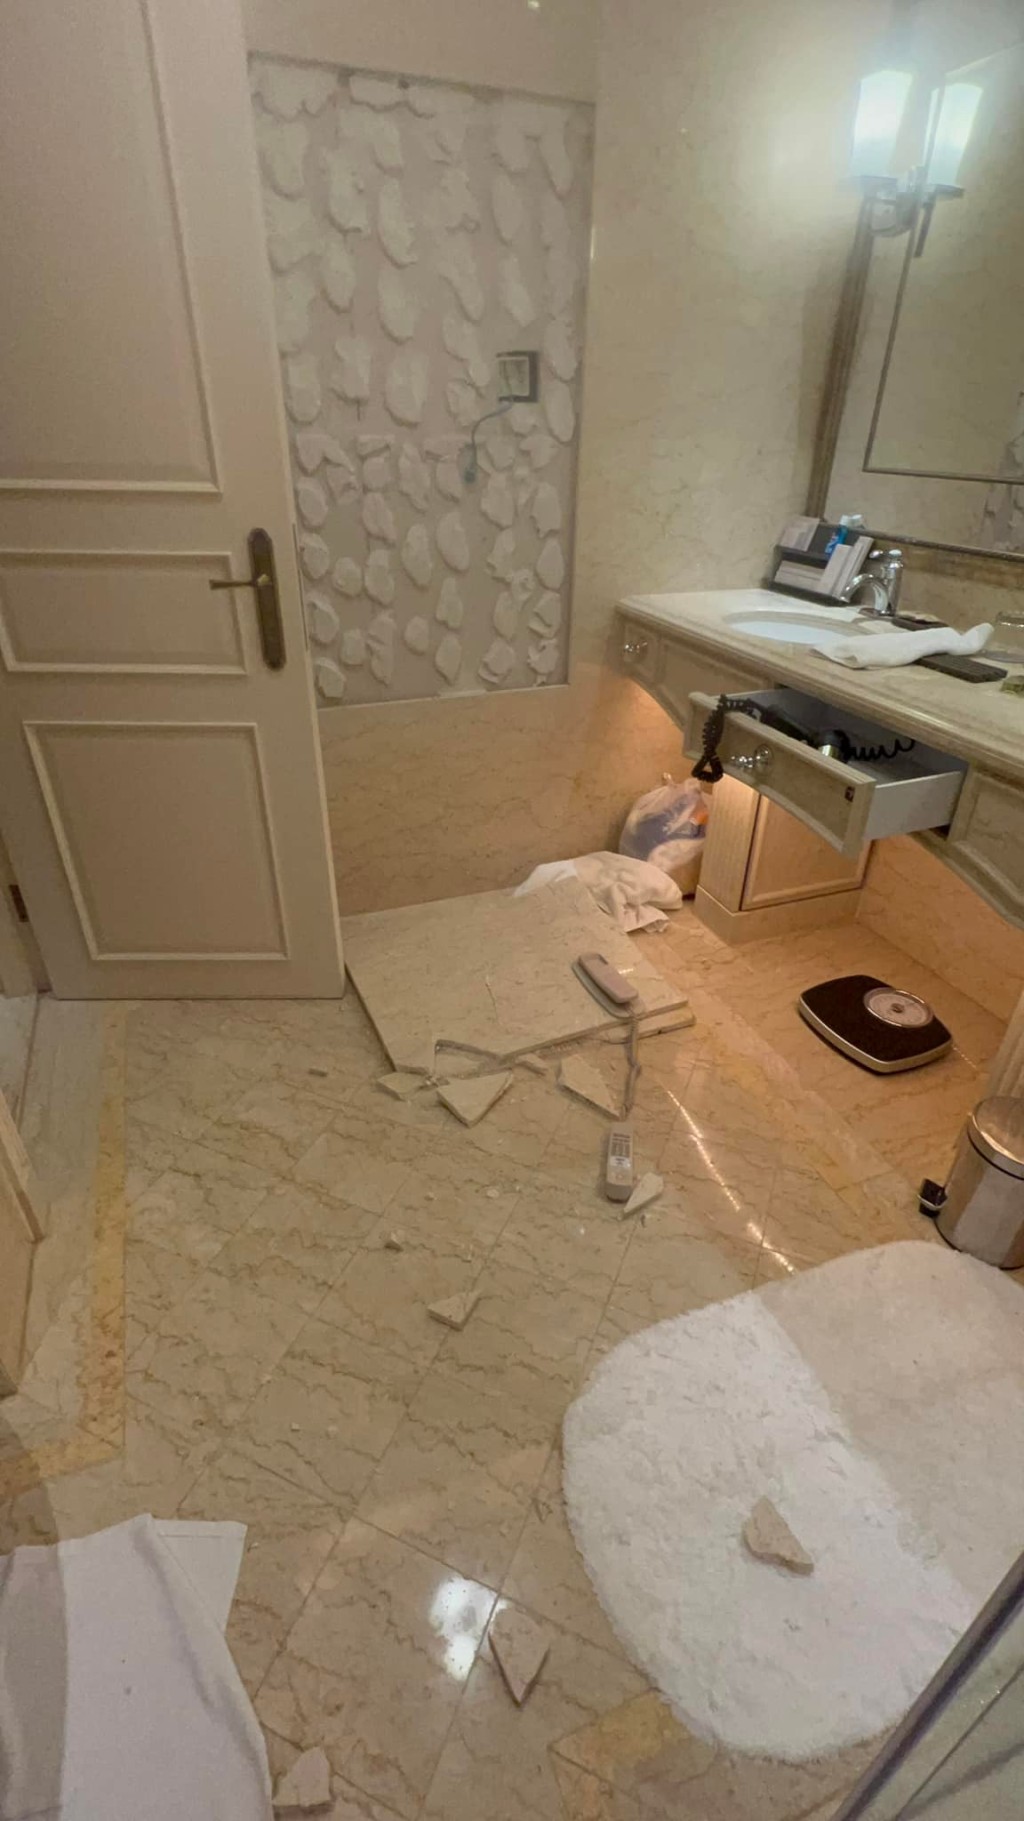 酒店浴室墙身大幅崩塌。「澳门高登起底组」网民图片